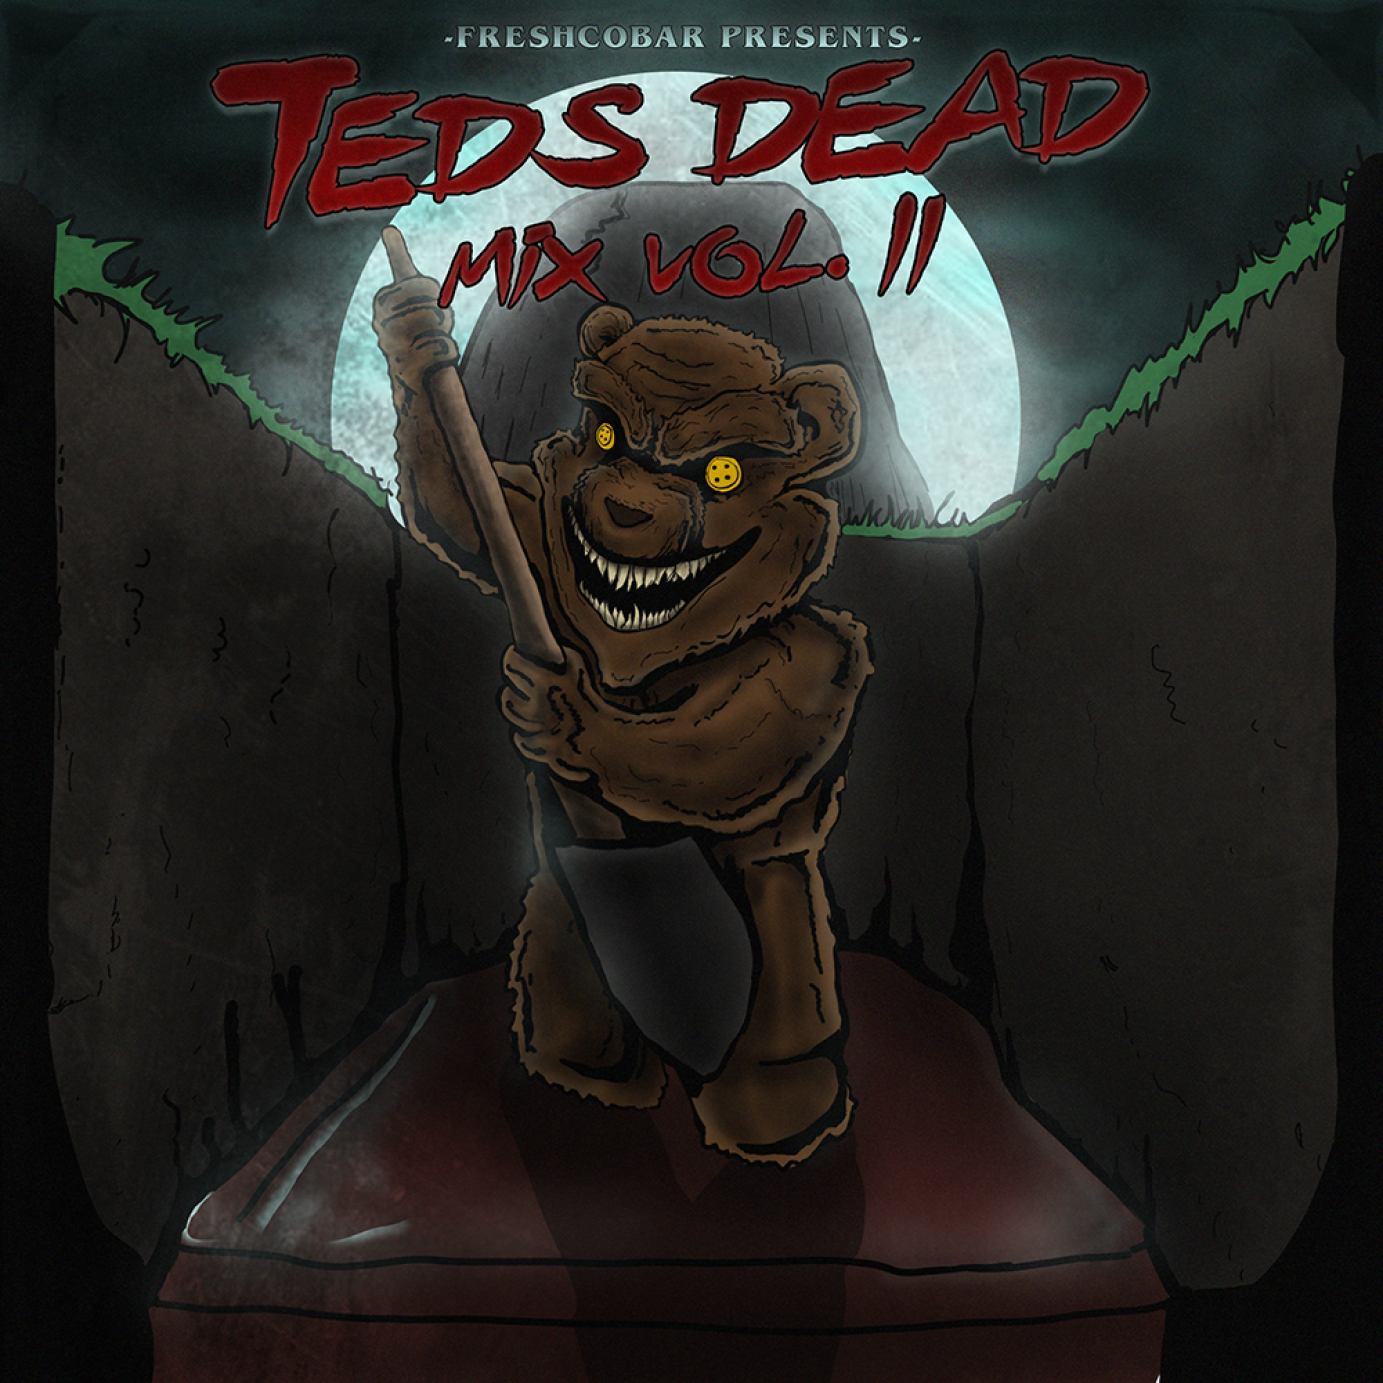 Artwork for Teds Dead by Jon Hesse